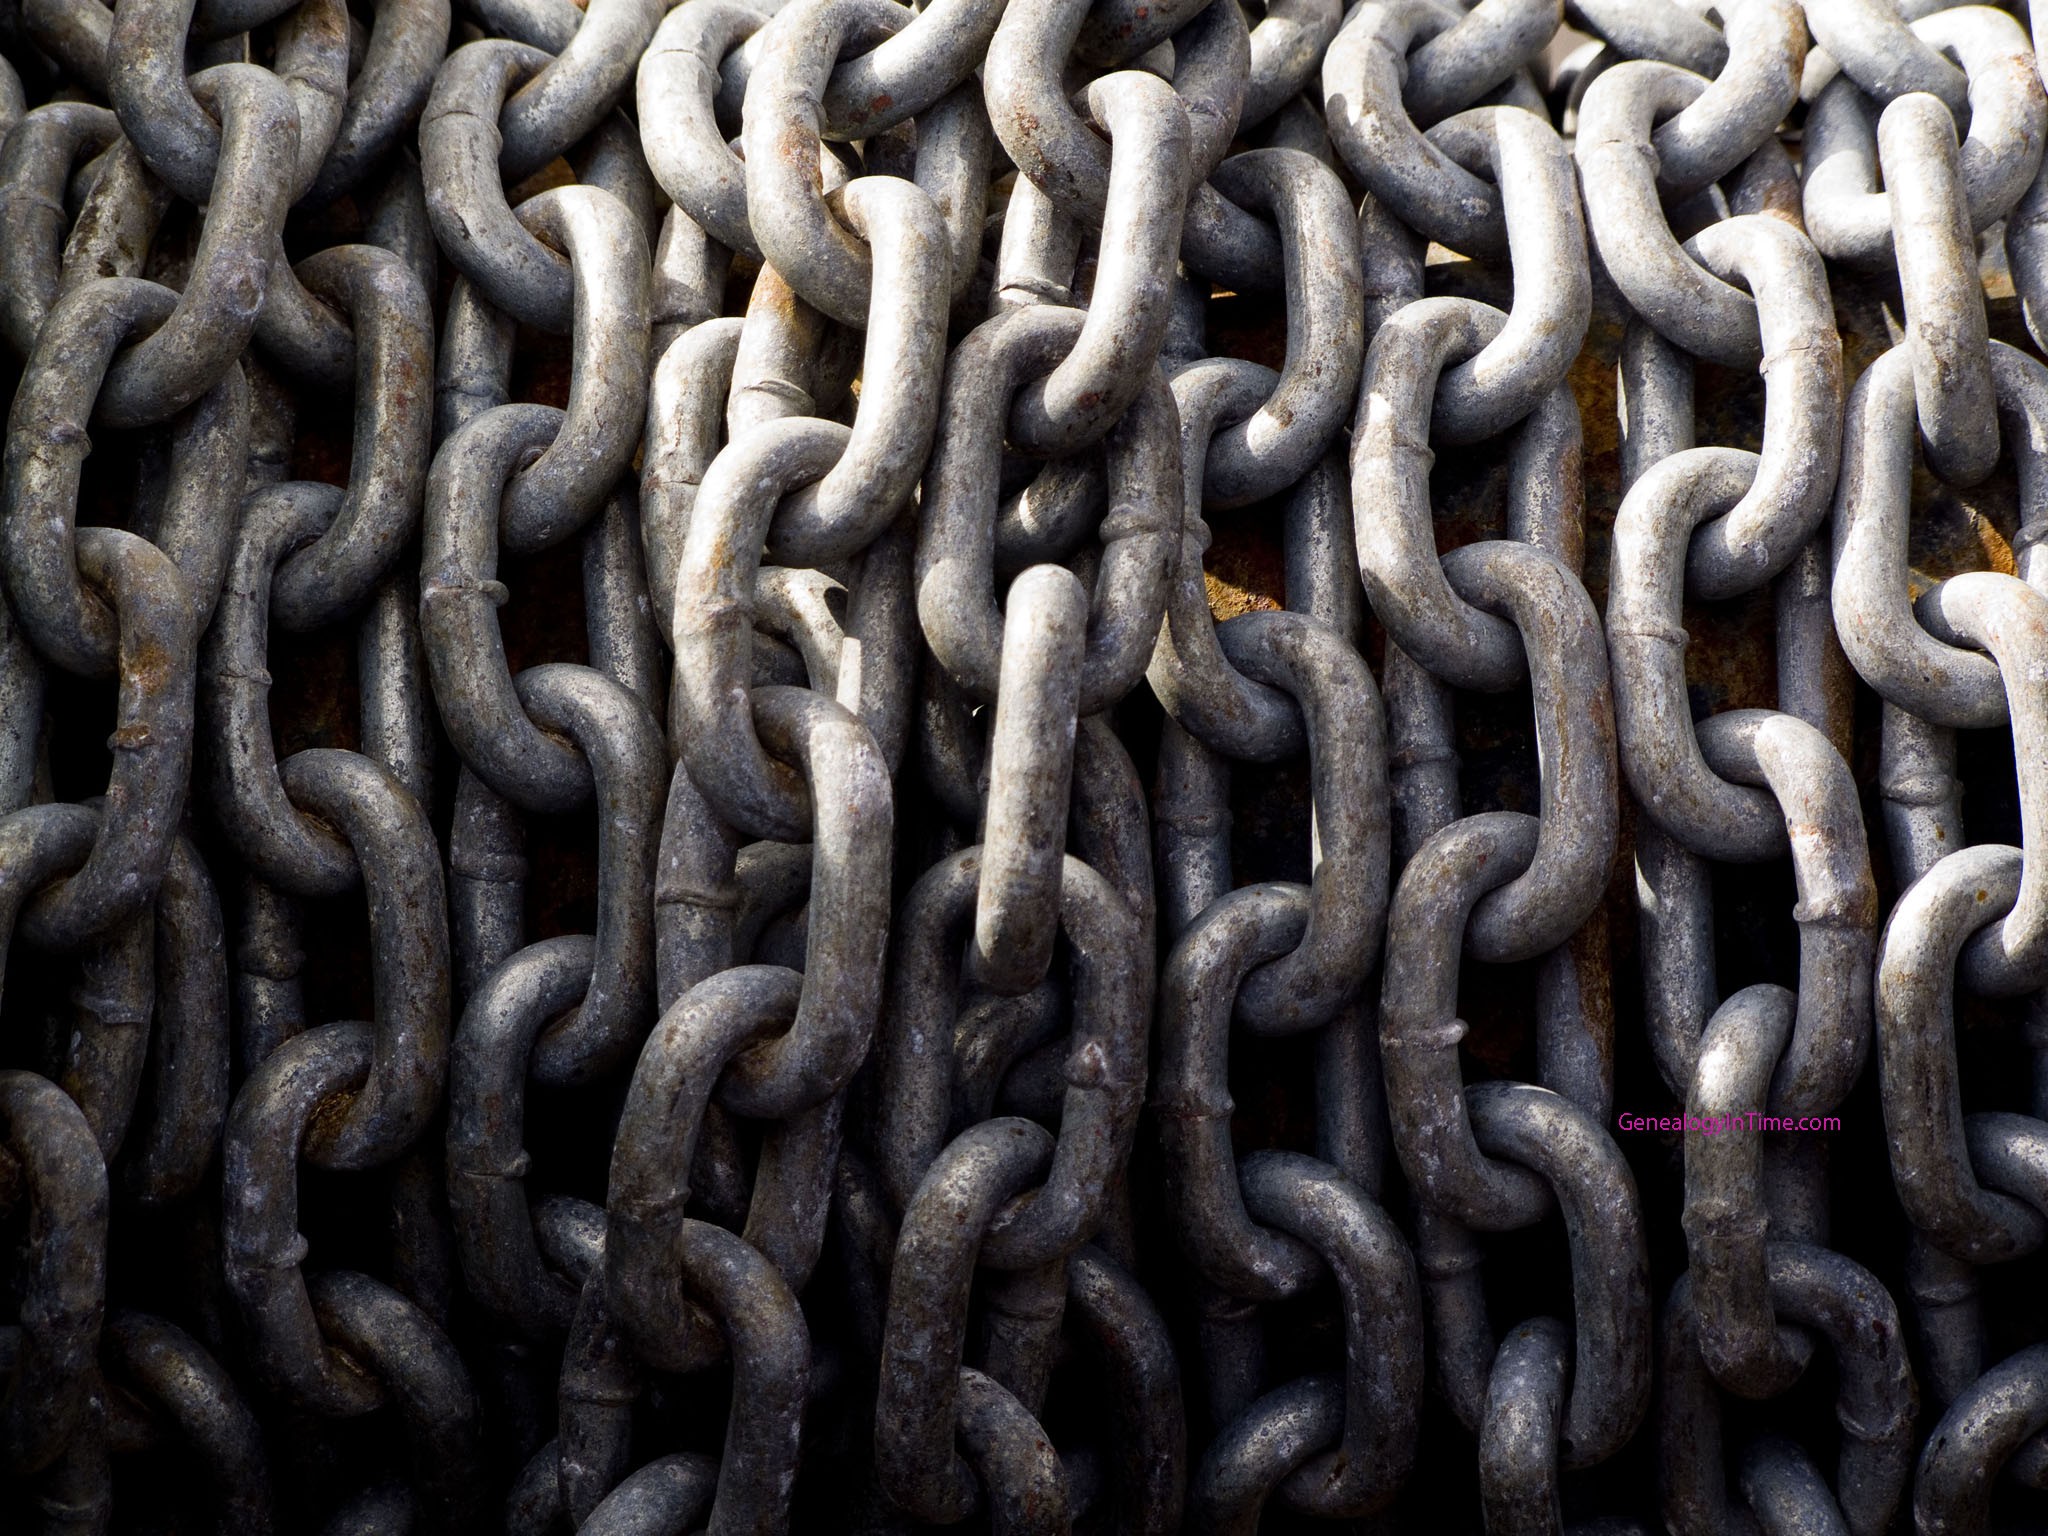 Chains everywhere